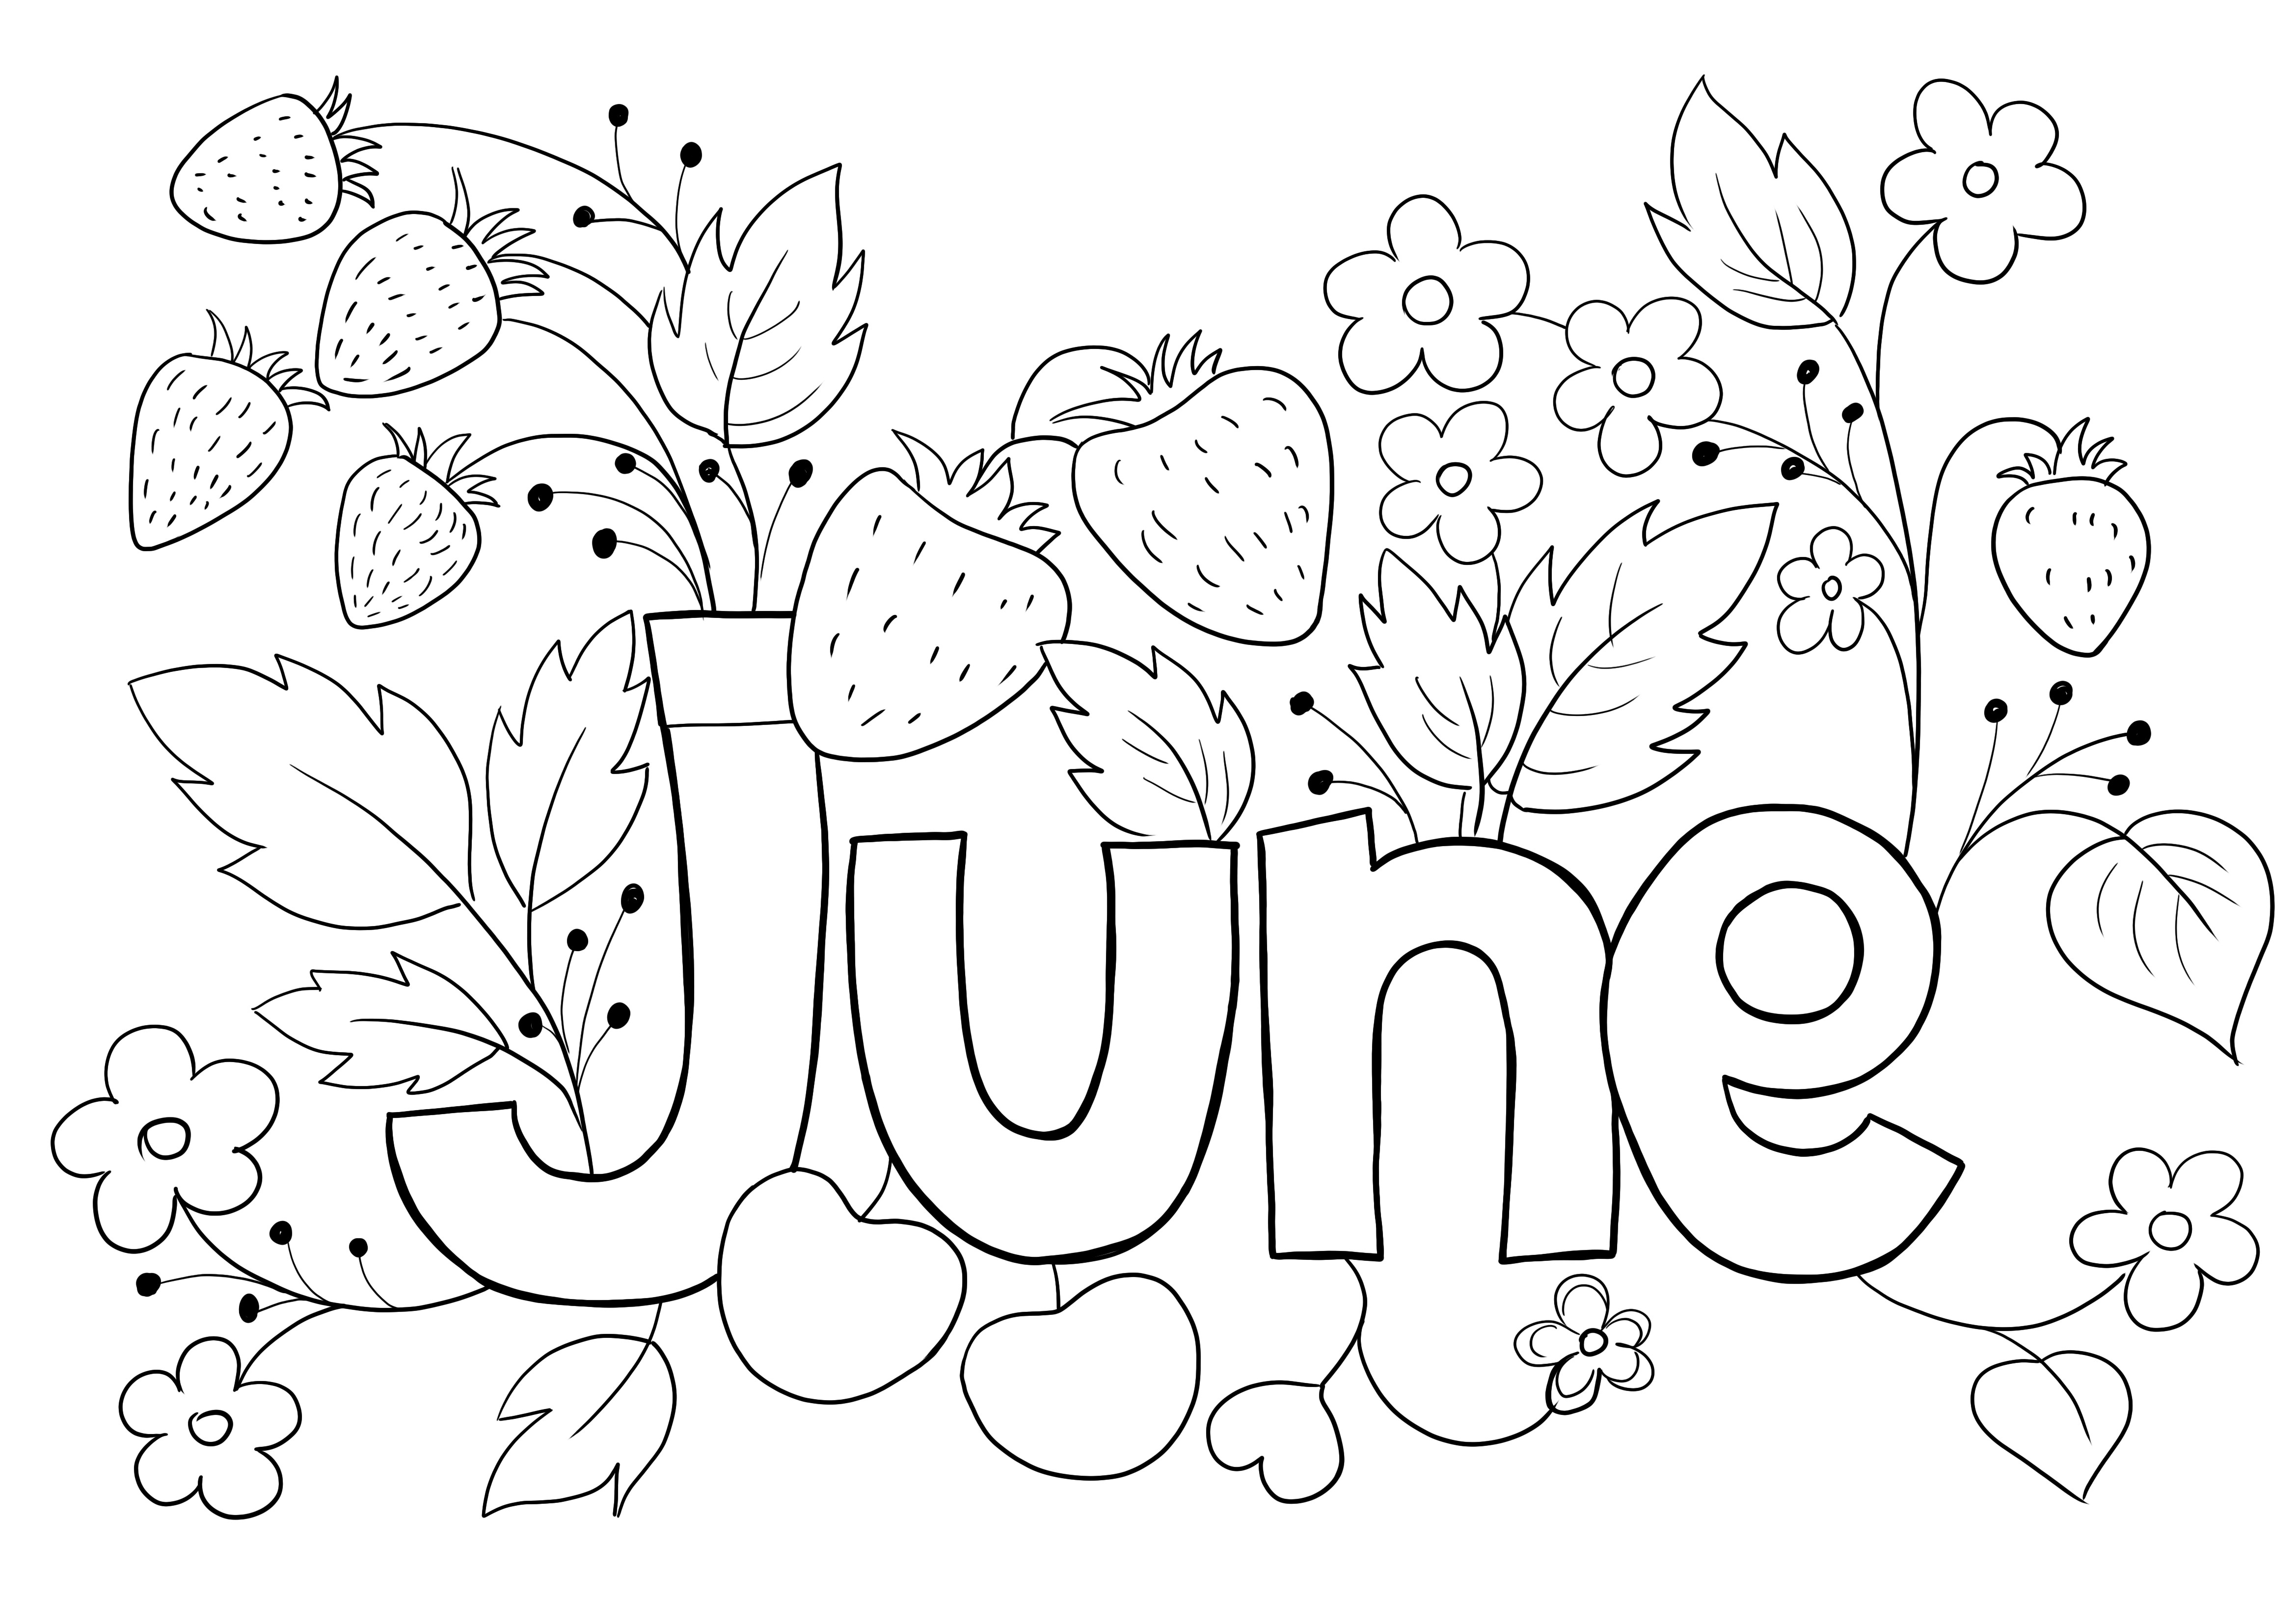 Imagen para colorear del mes de junio de la temporada de verano para imprimir gratis